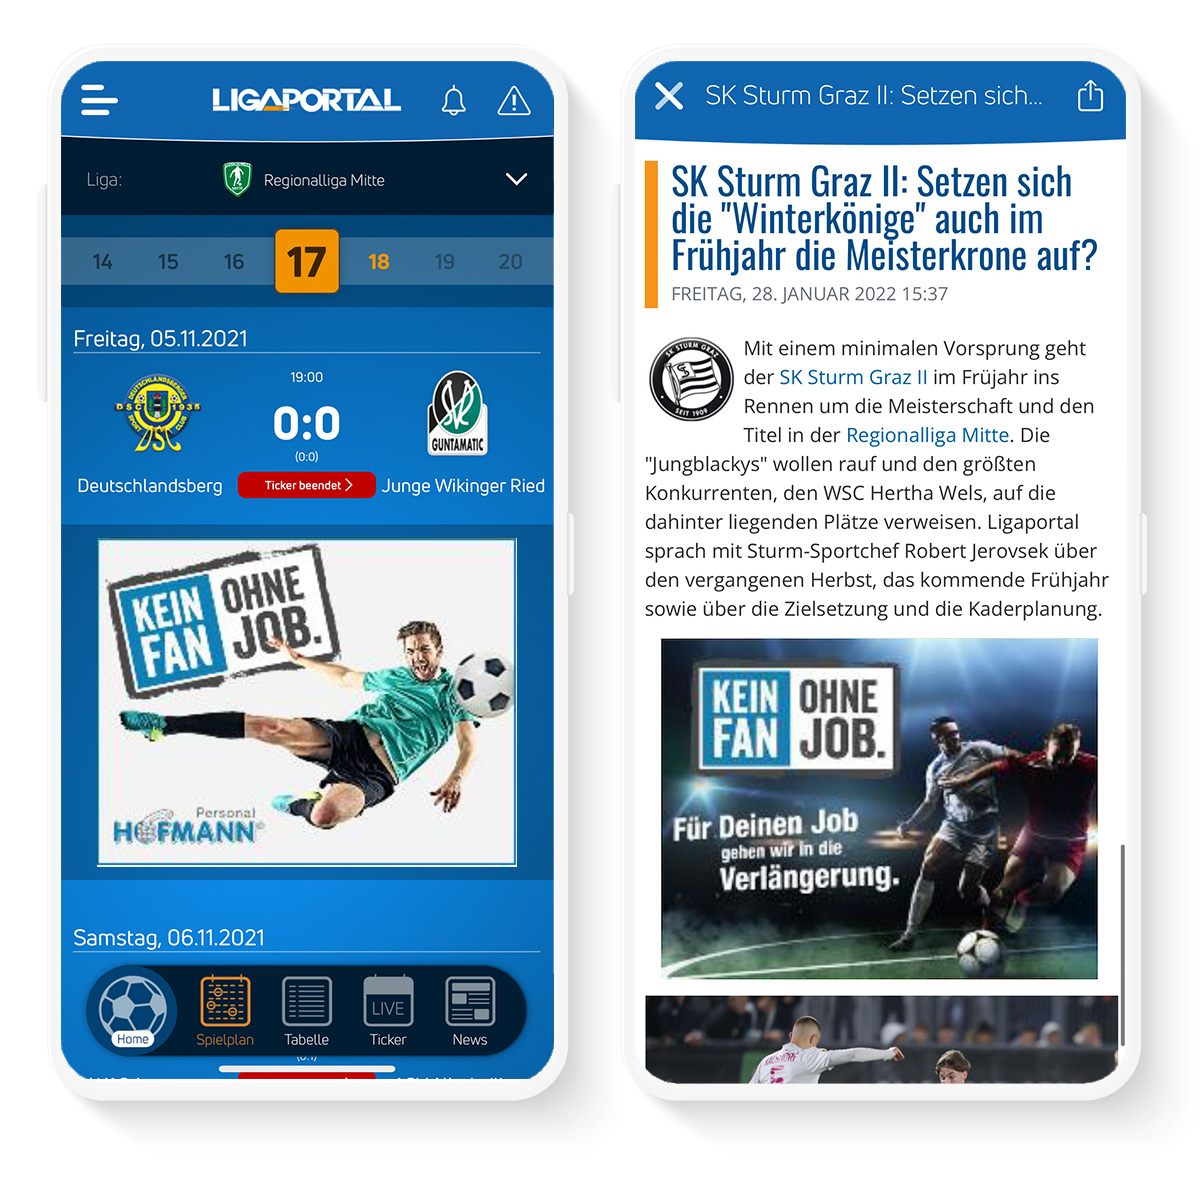 Bannerpräsenz für Liga-Sponsoren in der Ligaportal App